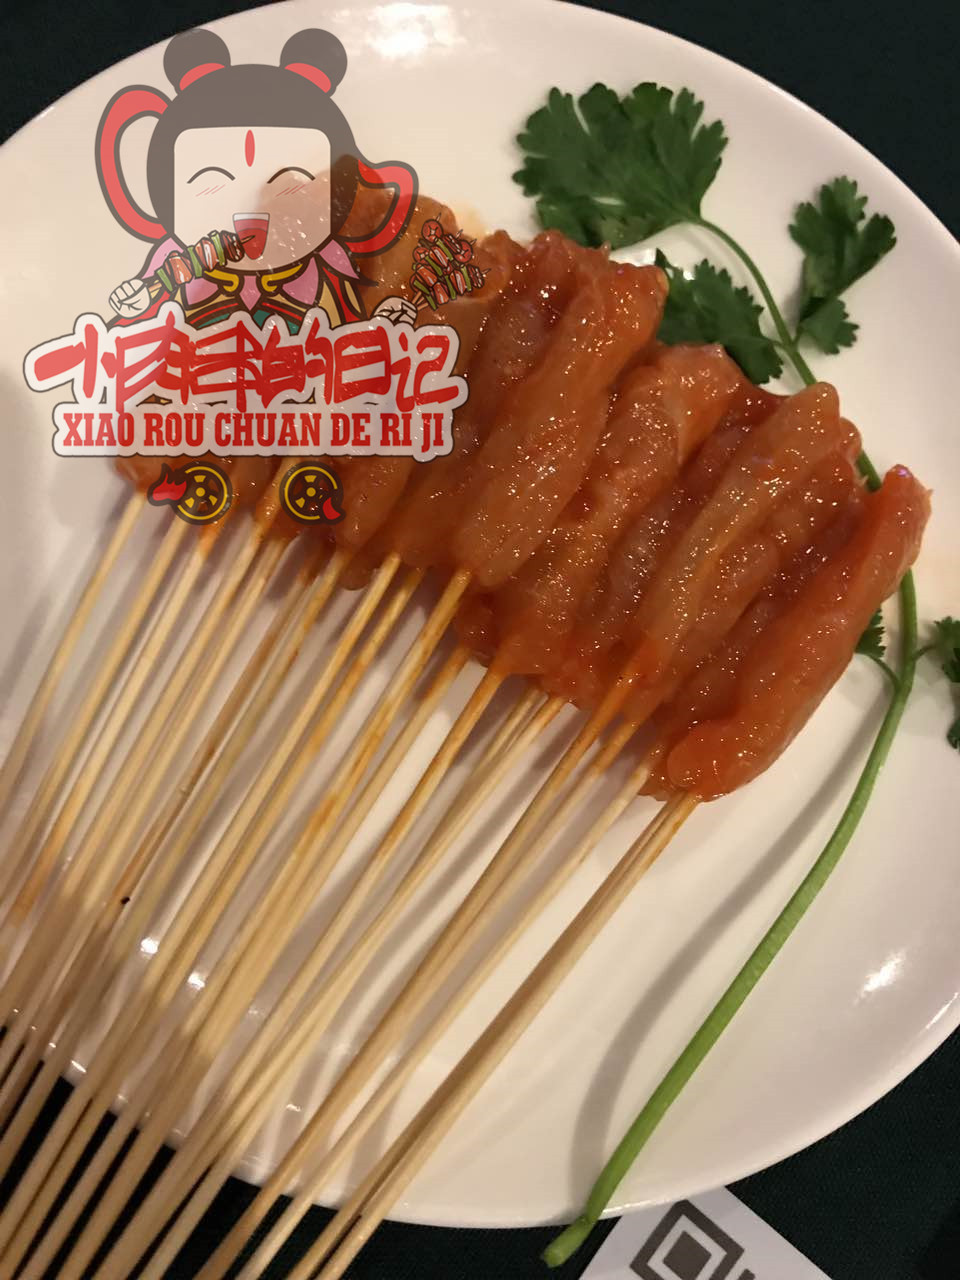 小肉串的日记网红串炒饭多种口味秘制酱料美食新吃法